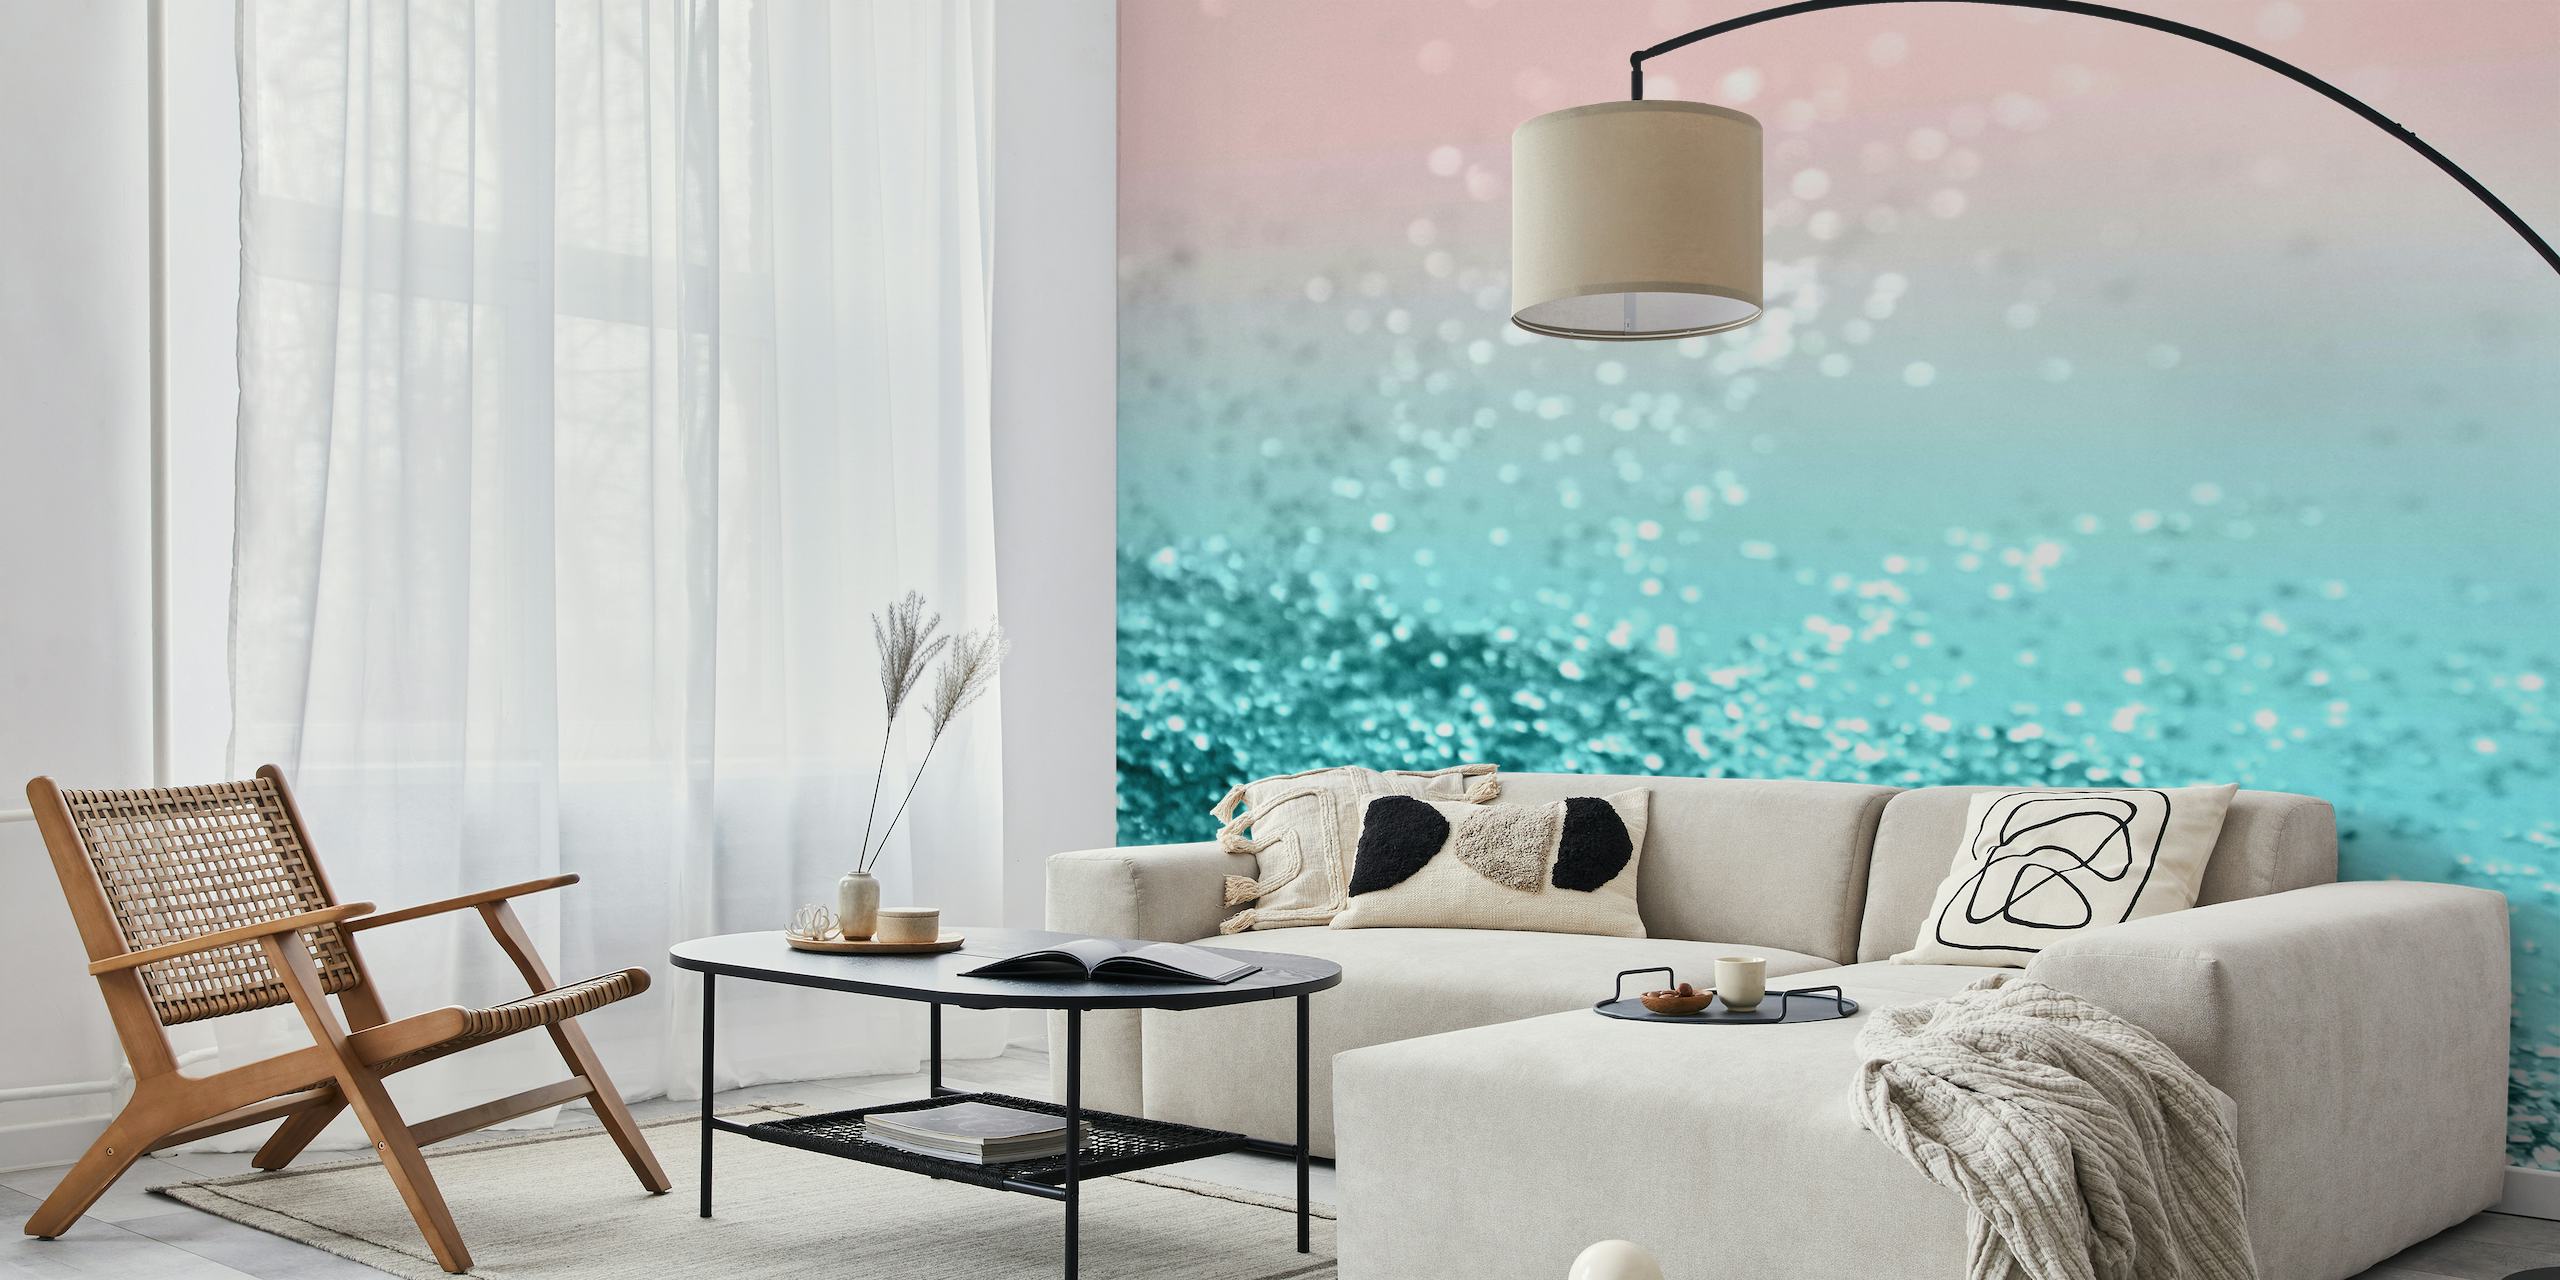 Fototapete mit Farbverlauf von Aquamarin zu Rosa und einer glitzernden Textur, die an eine tropische Sommerküste erinnert.